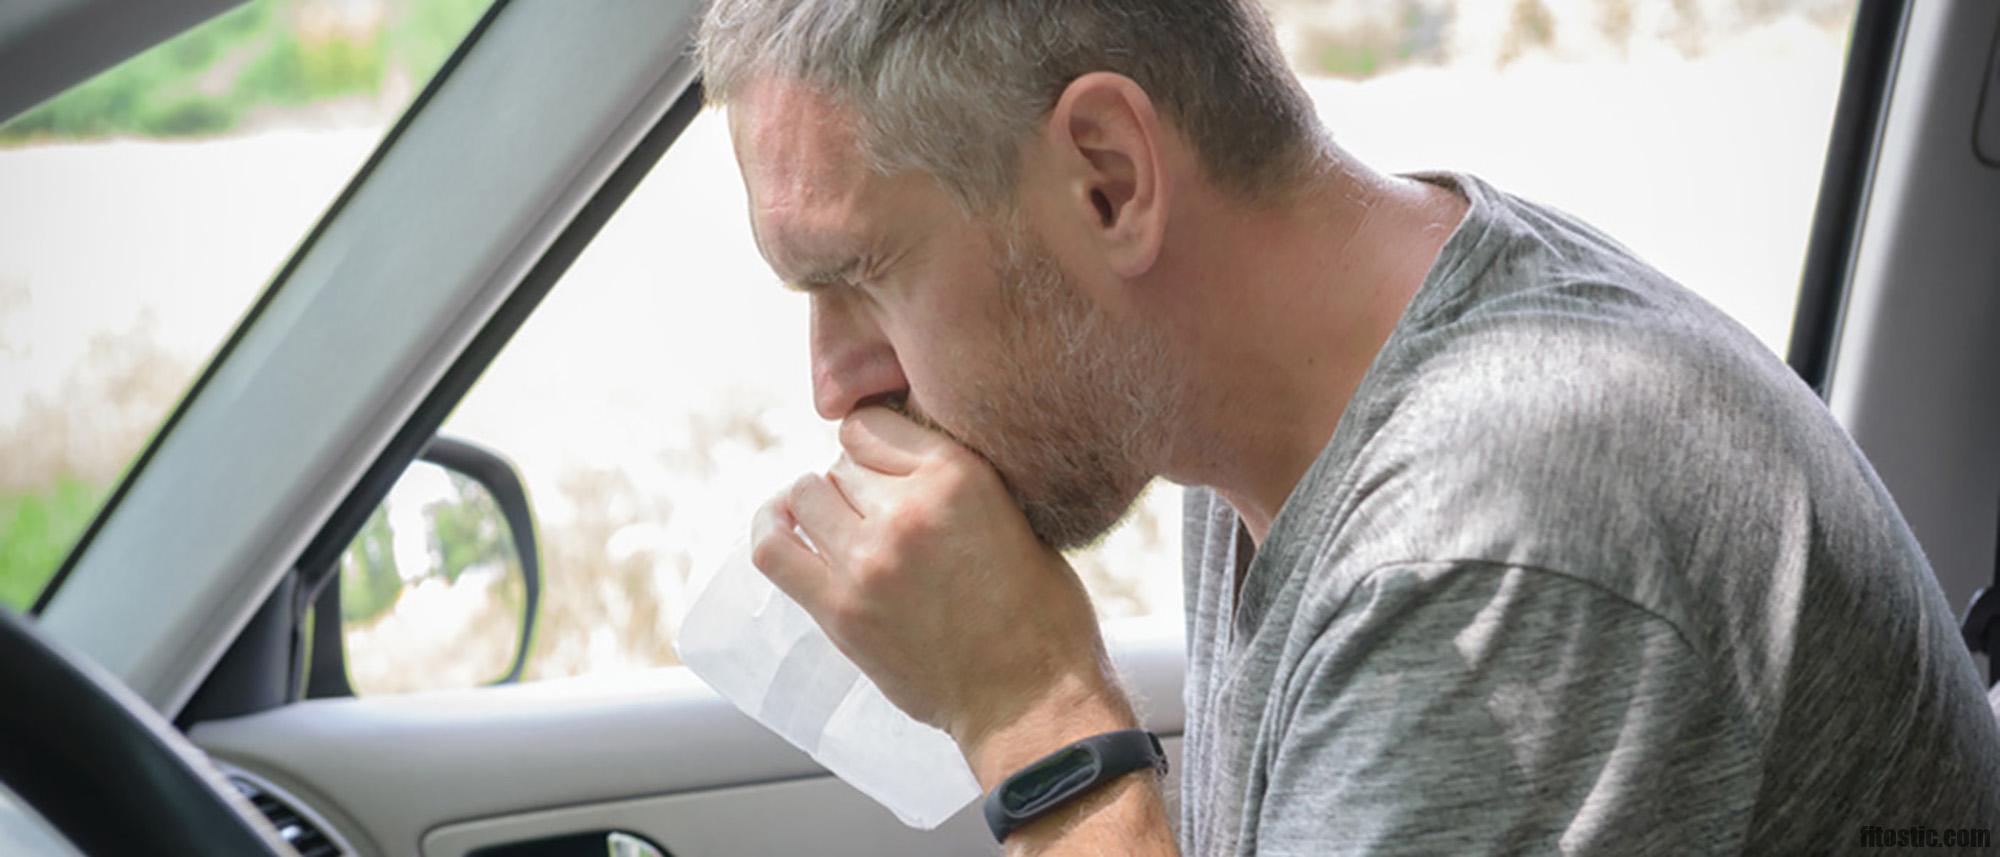 Comment soigner un mal de gorge rapidement ?